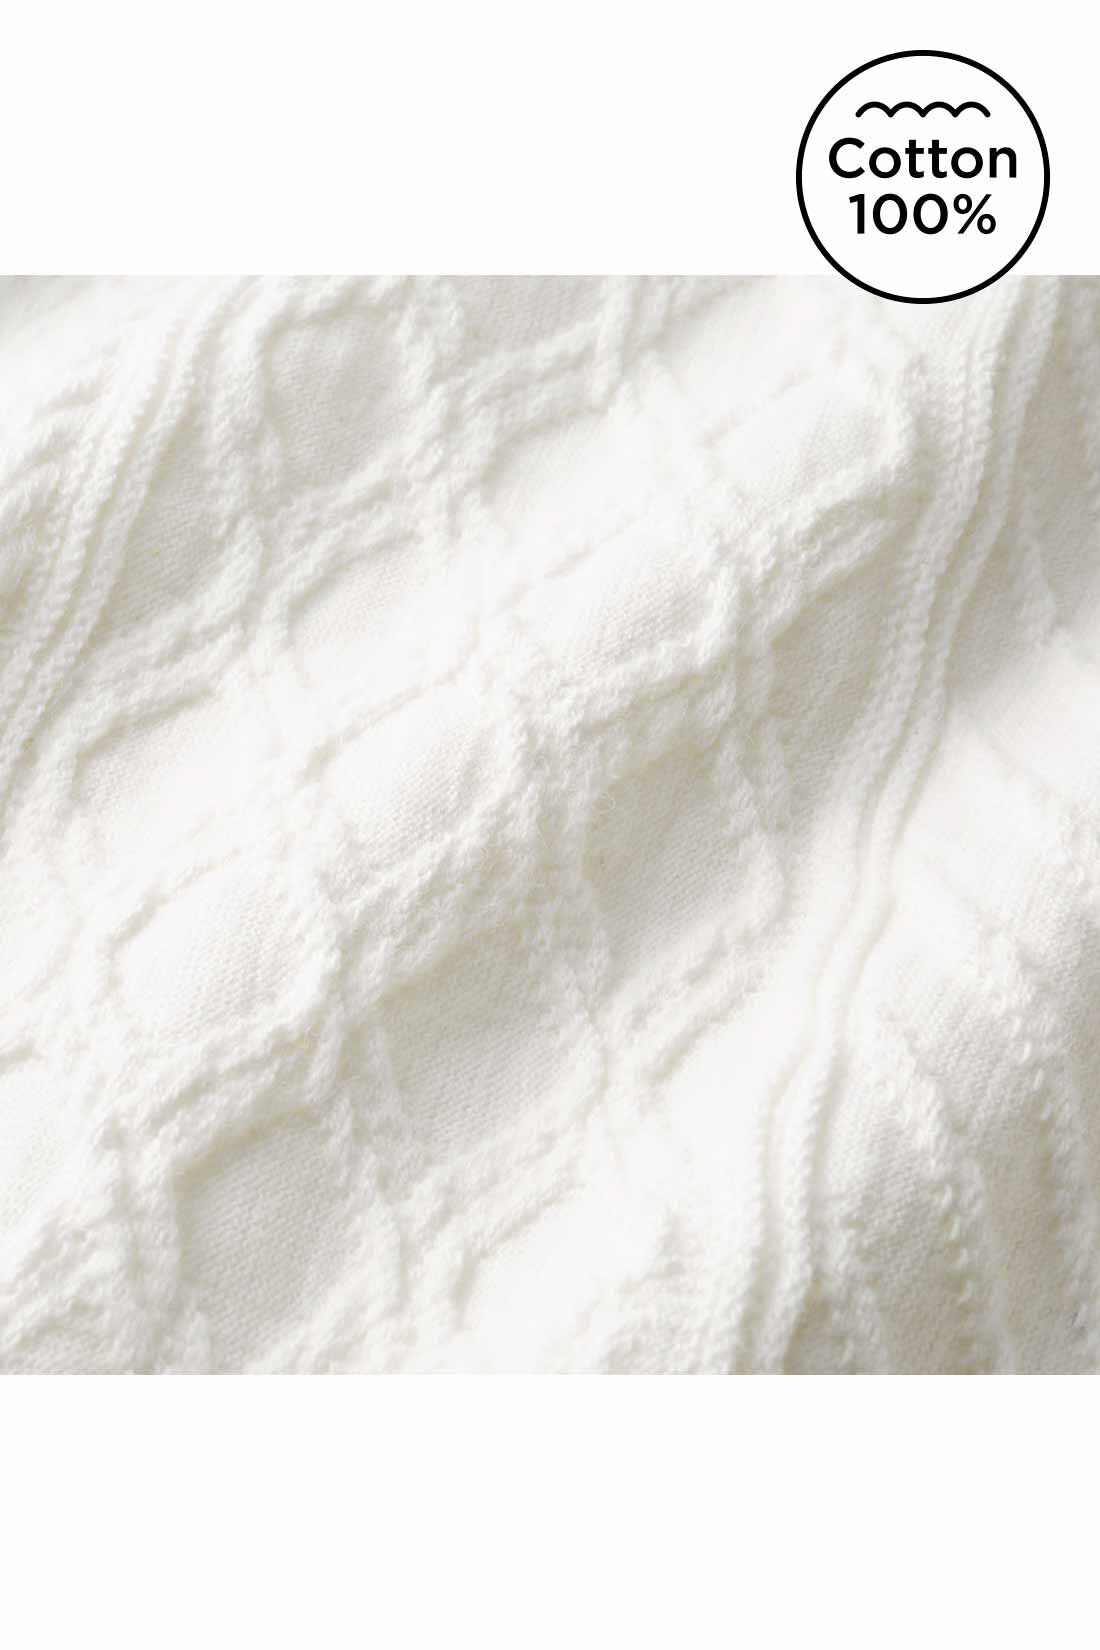 Live in  comfort|Live love cottonプロジェクト　リブ イン コンフォート　編み柄が素敵な袖口リブオーガニックコットントップス〈ホワイト〉|素肌に心地いいオーガニックコットン100％ 上品なキーネックやジャカード編みの高級感。ふっくらやさしく軽やかで、からだのラインを拾いにくい適度な厚みが◎。